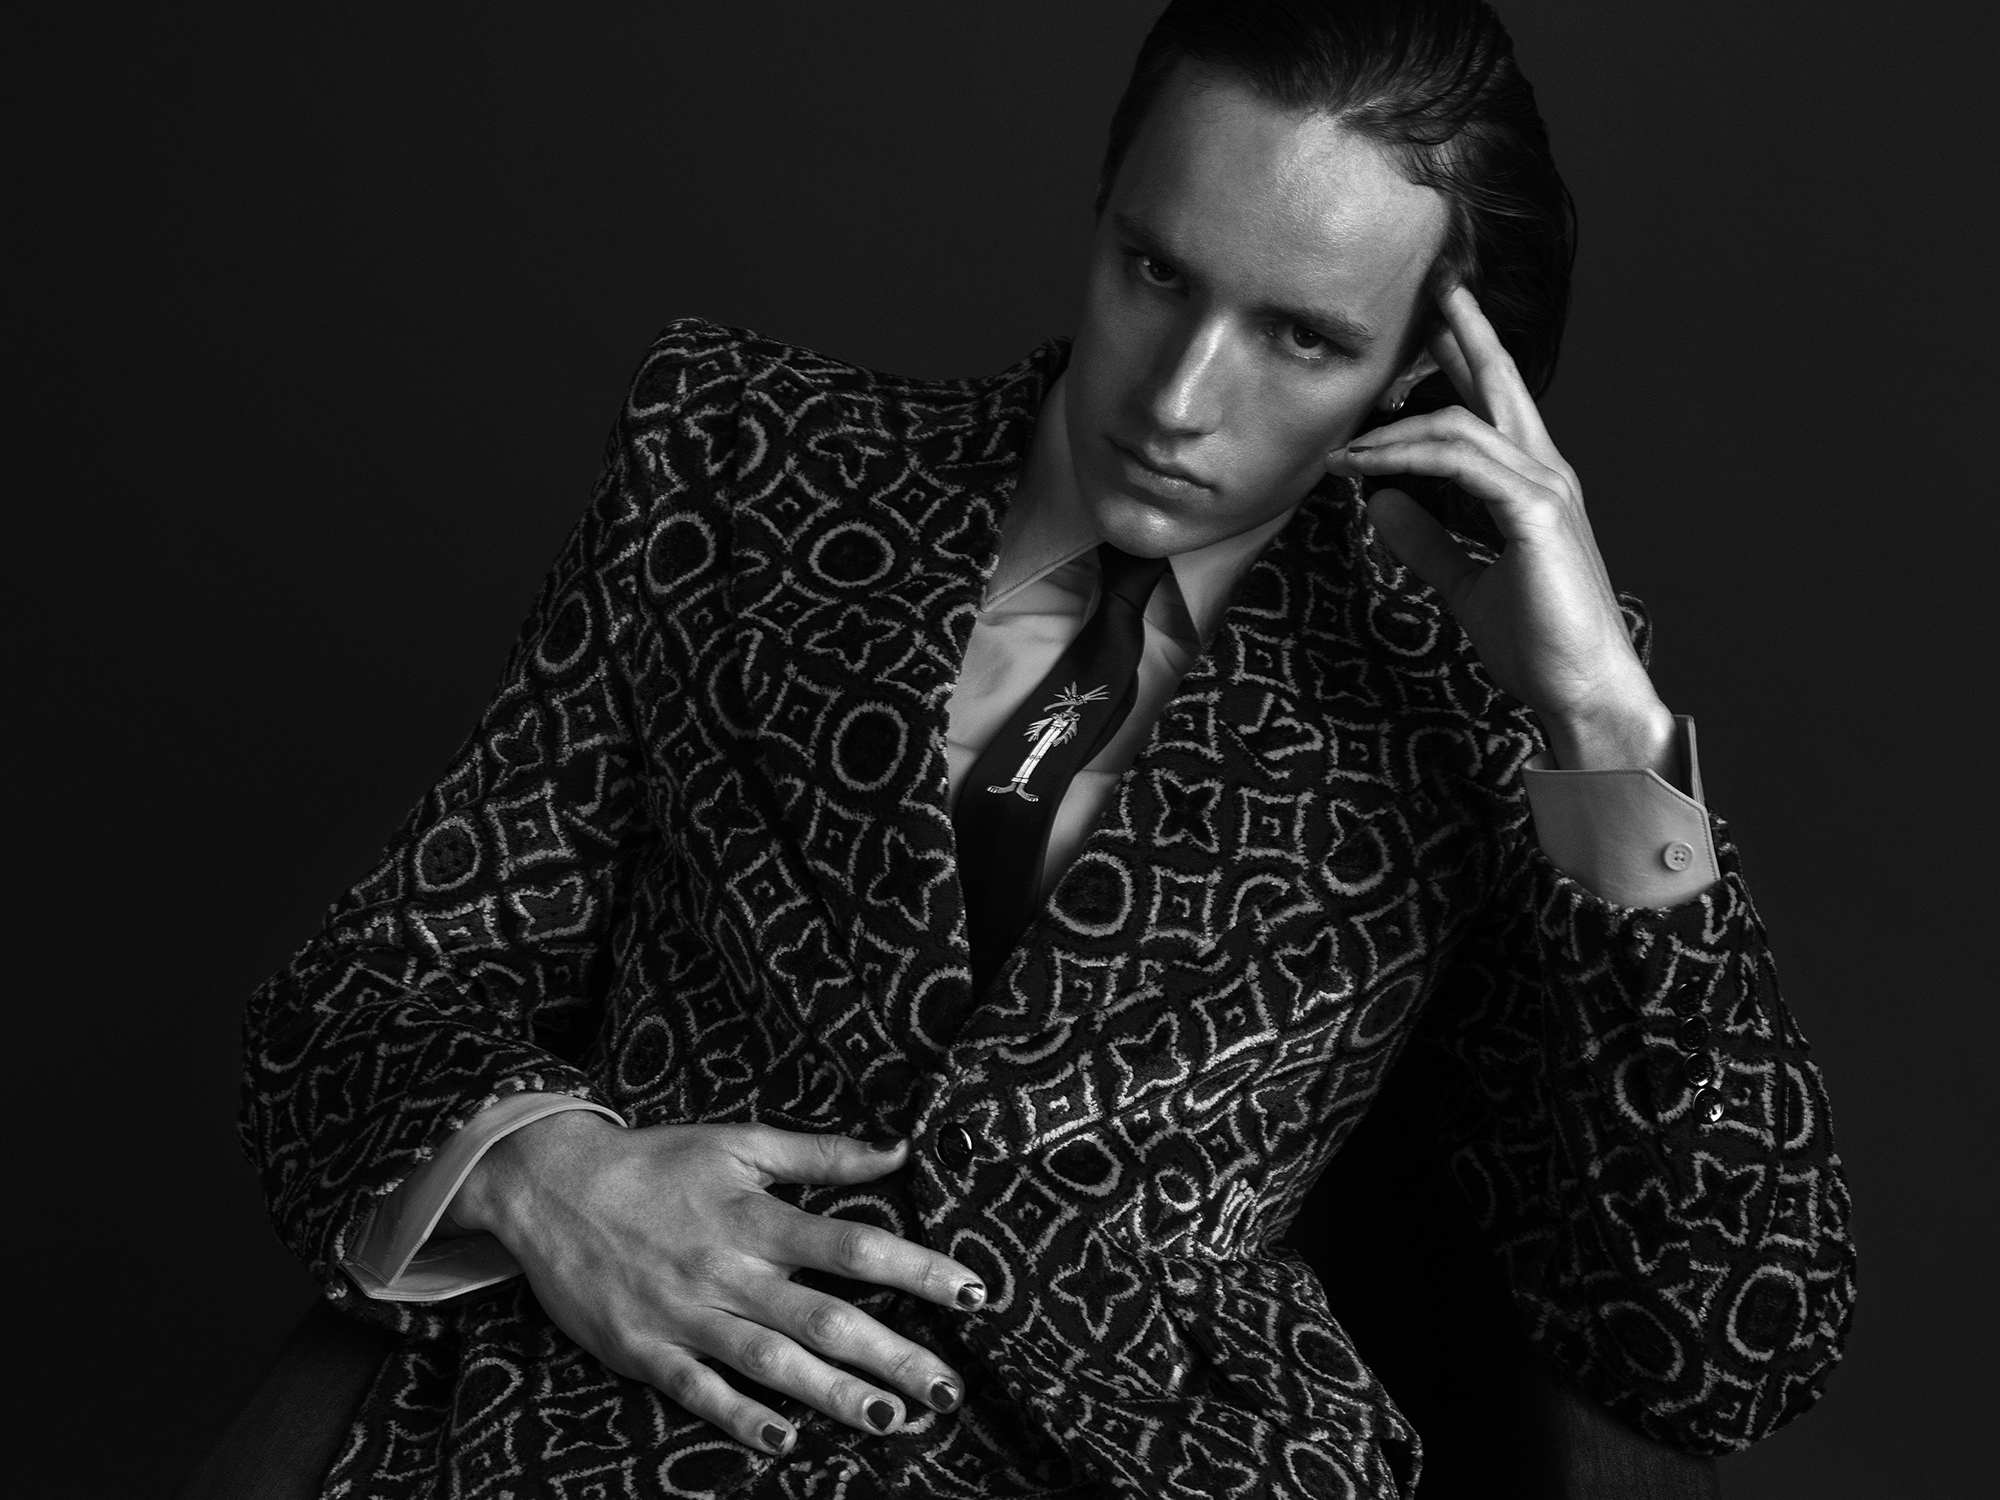 Cian @imgmodels @ciancm in Louis Vuitton Homme ©Buonomo & Cometti